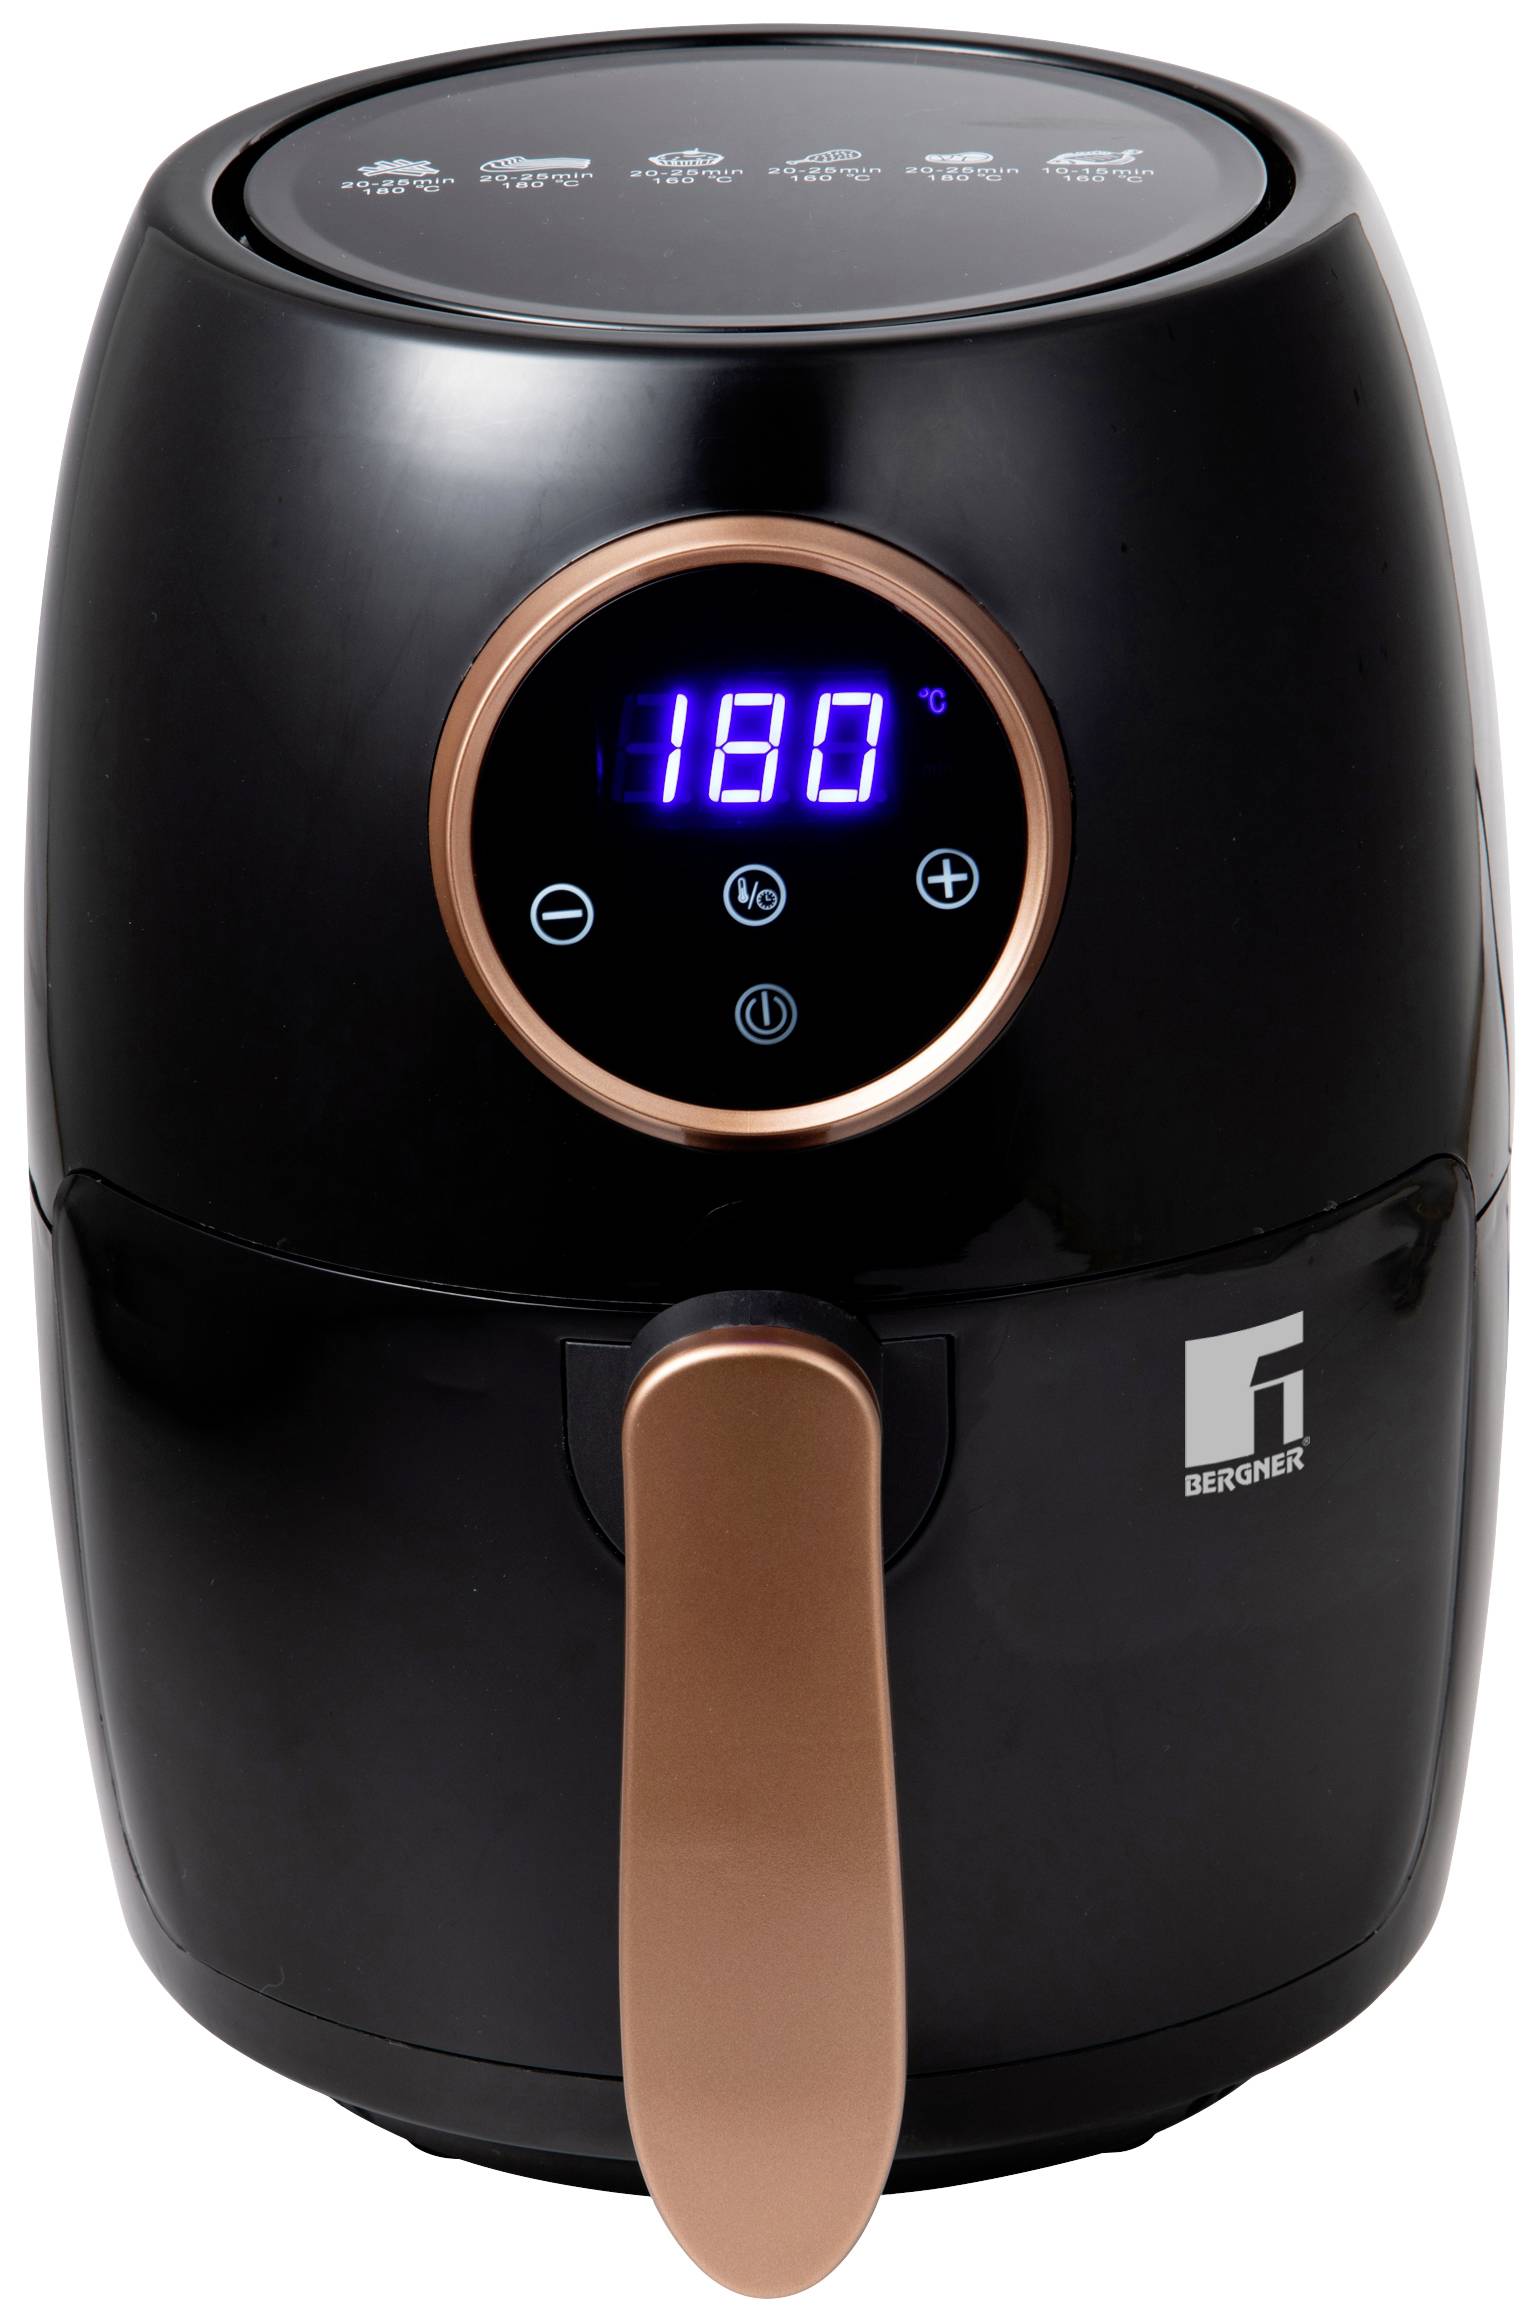 Bergner horkovzdušná fritéza, 1000 W, nepřilnavý povlak, ochrana proti přehřátí, s displejem, funkce časovače, Cool touch pouzdro, černá, měděná